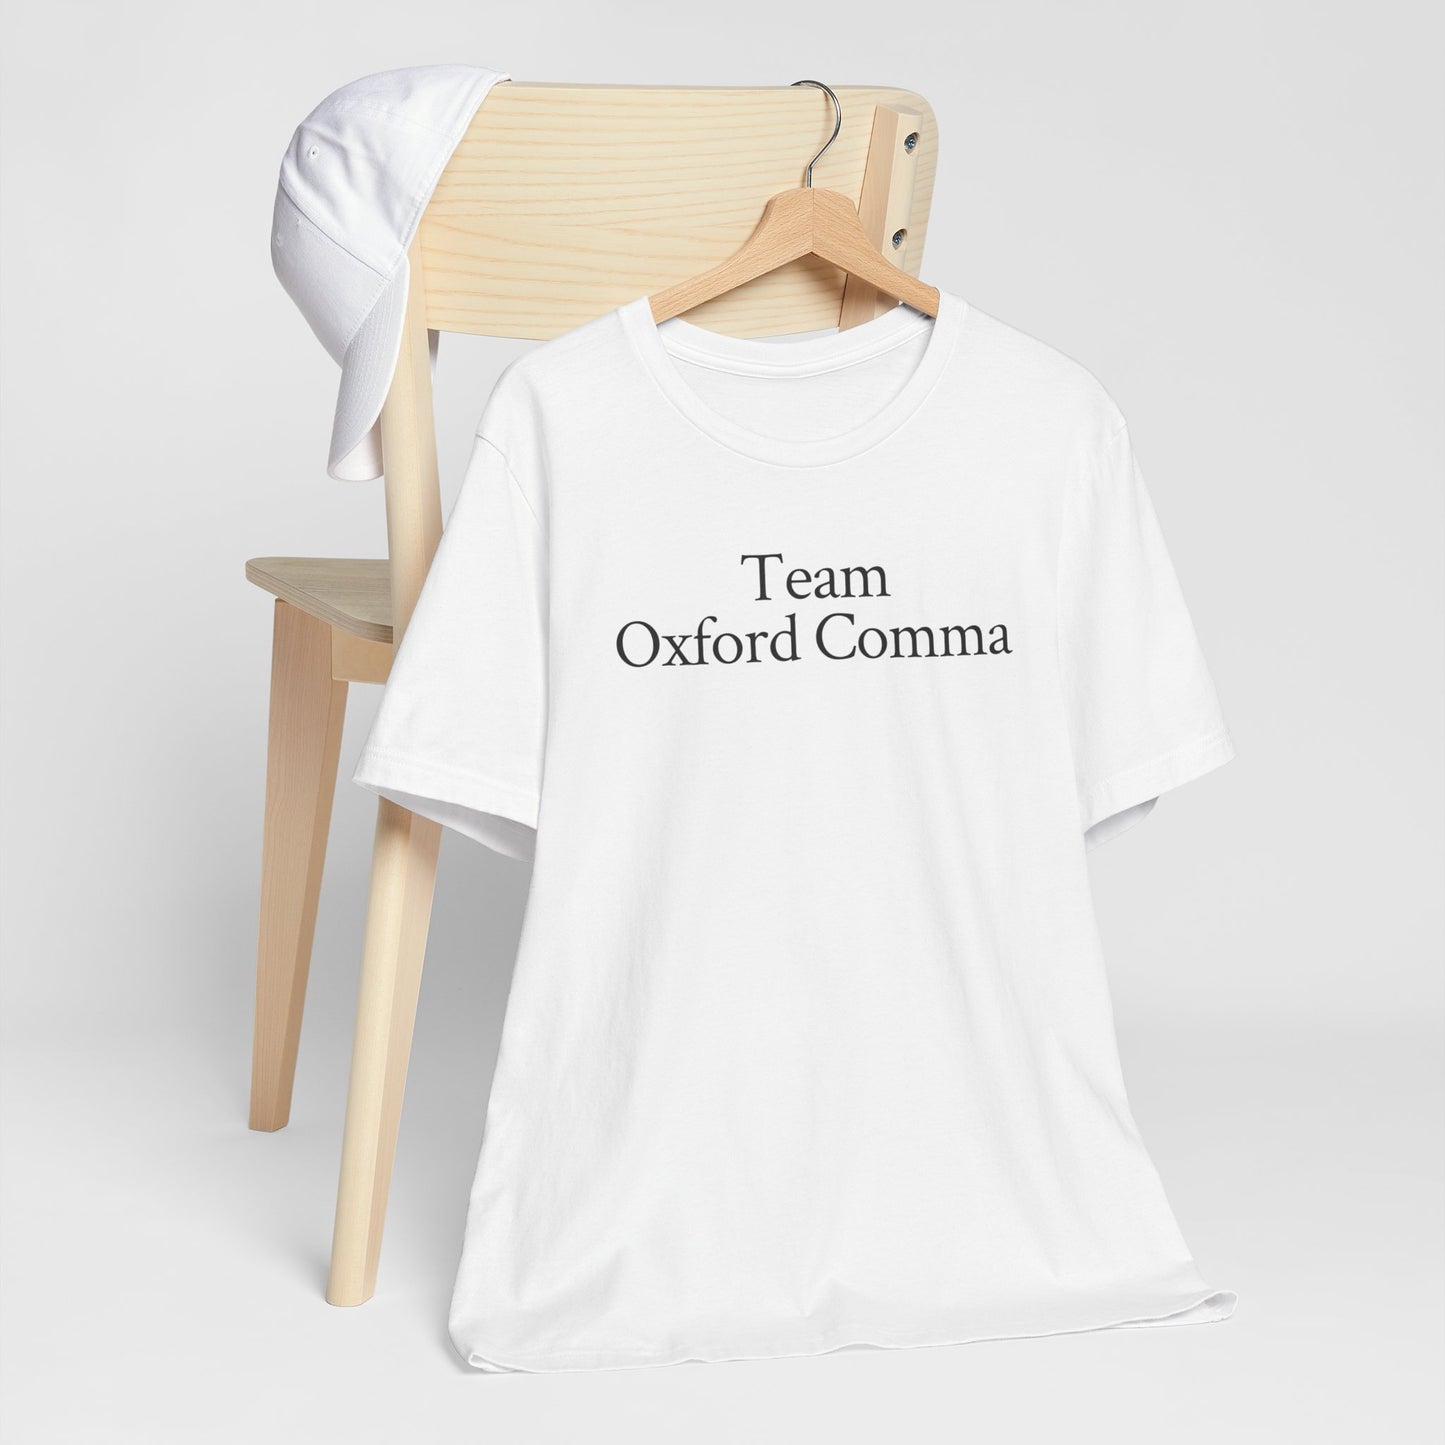 Team Oxford Comma